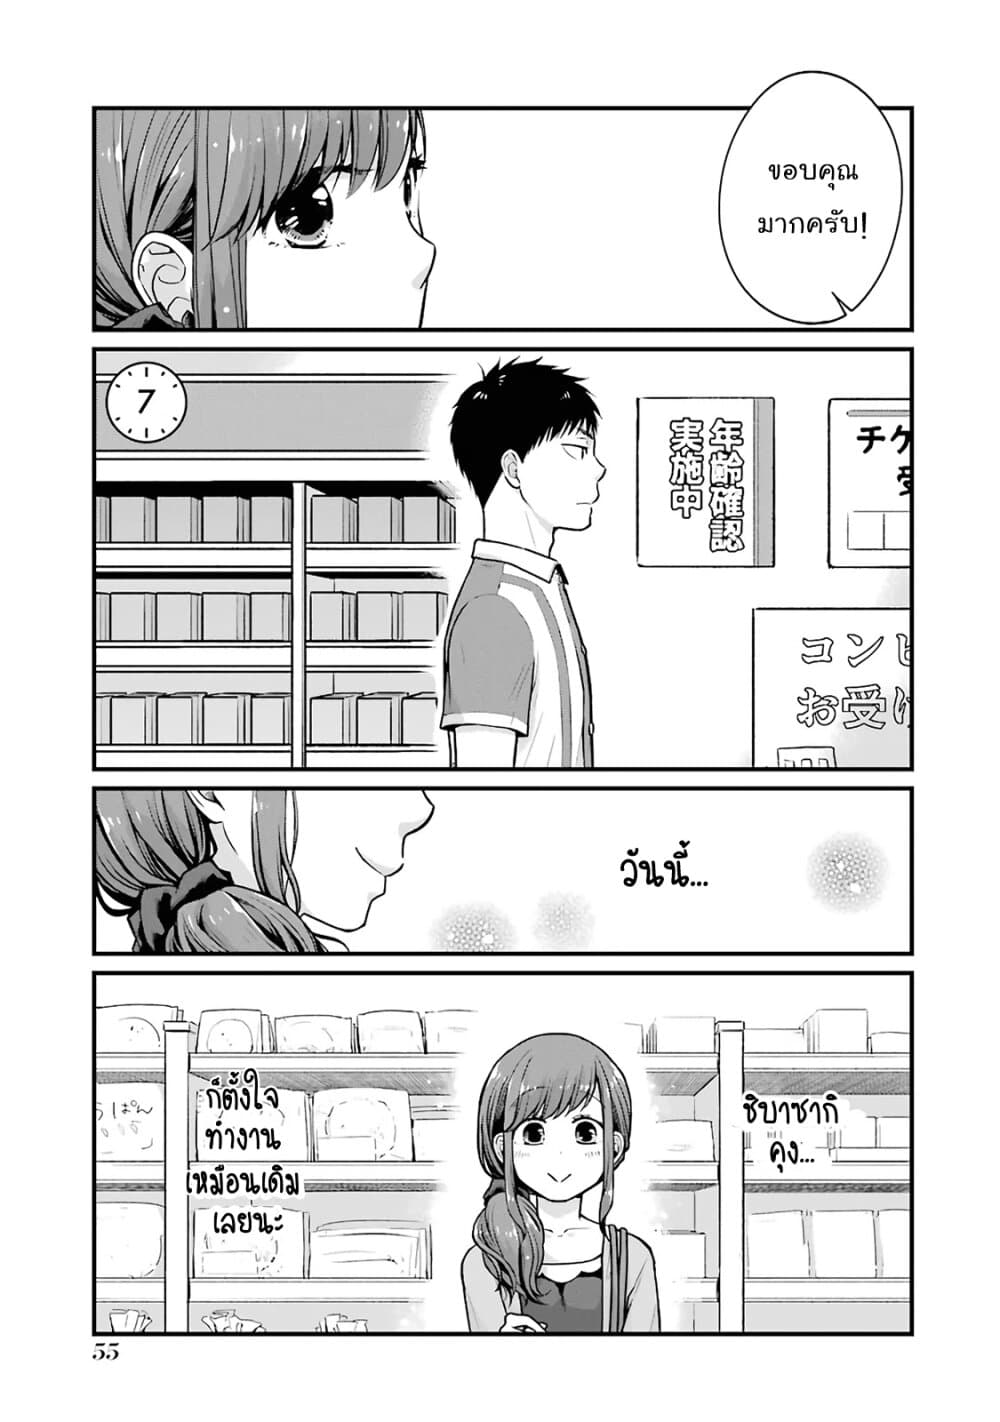 อ่านการ์ตูน Combini de Kimi to no 5 fun kan 7 ภาพที่ 1